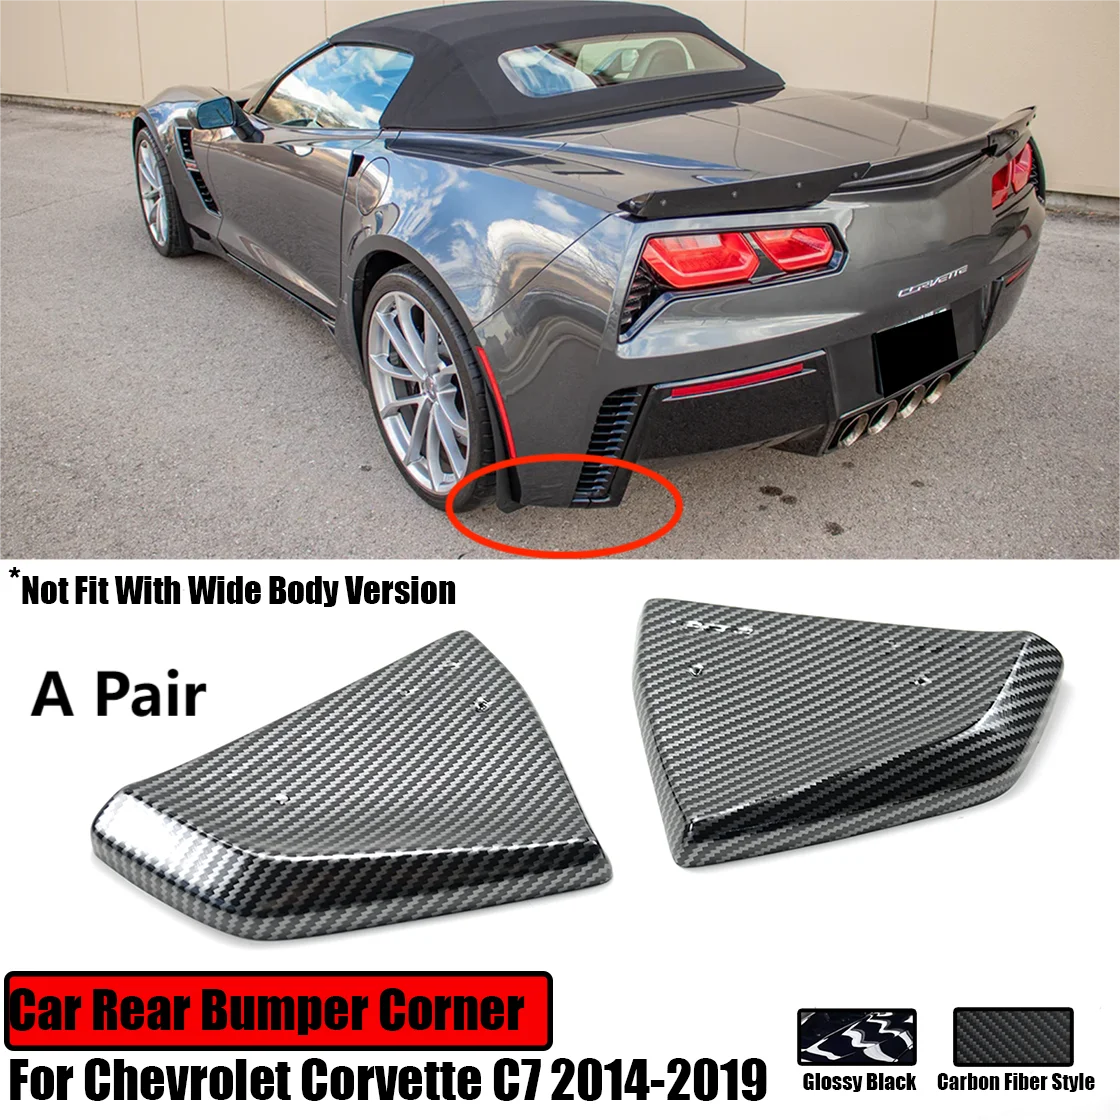 

Car Rear Bumper Corner For Chevrolet Corvette C7 2014-2019 Side Diffusers Splitter Spoiler Fender Glossy Black Carbon Fiber Look